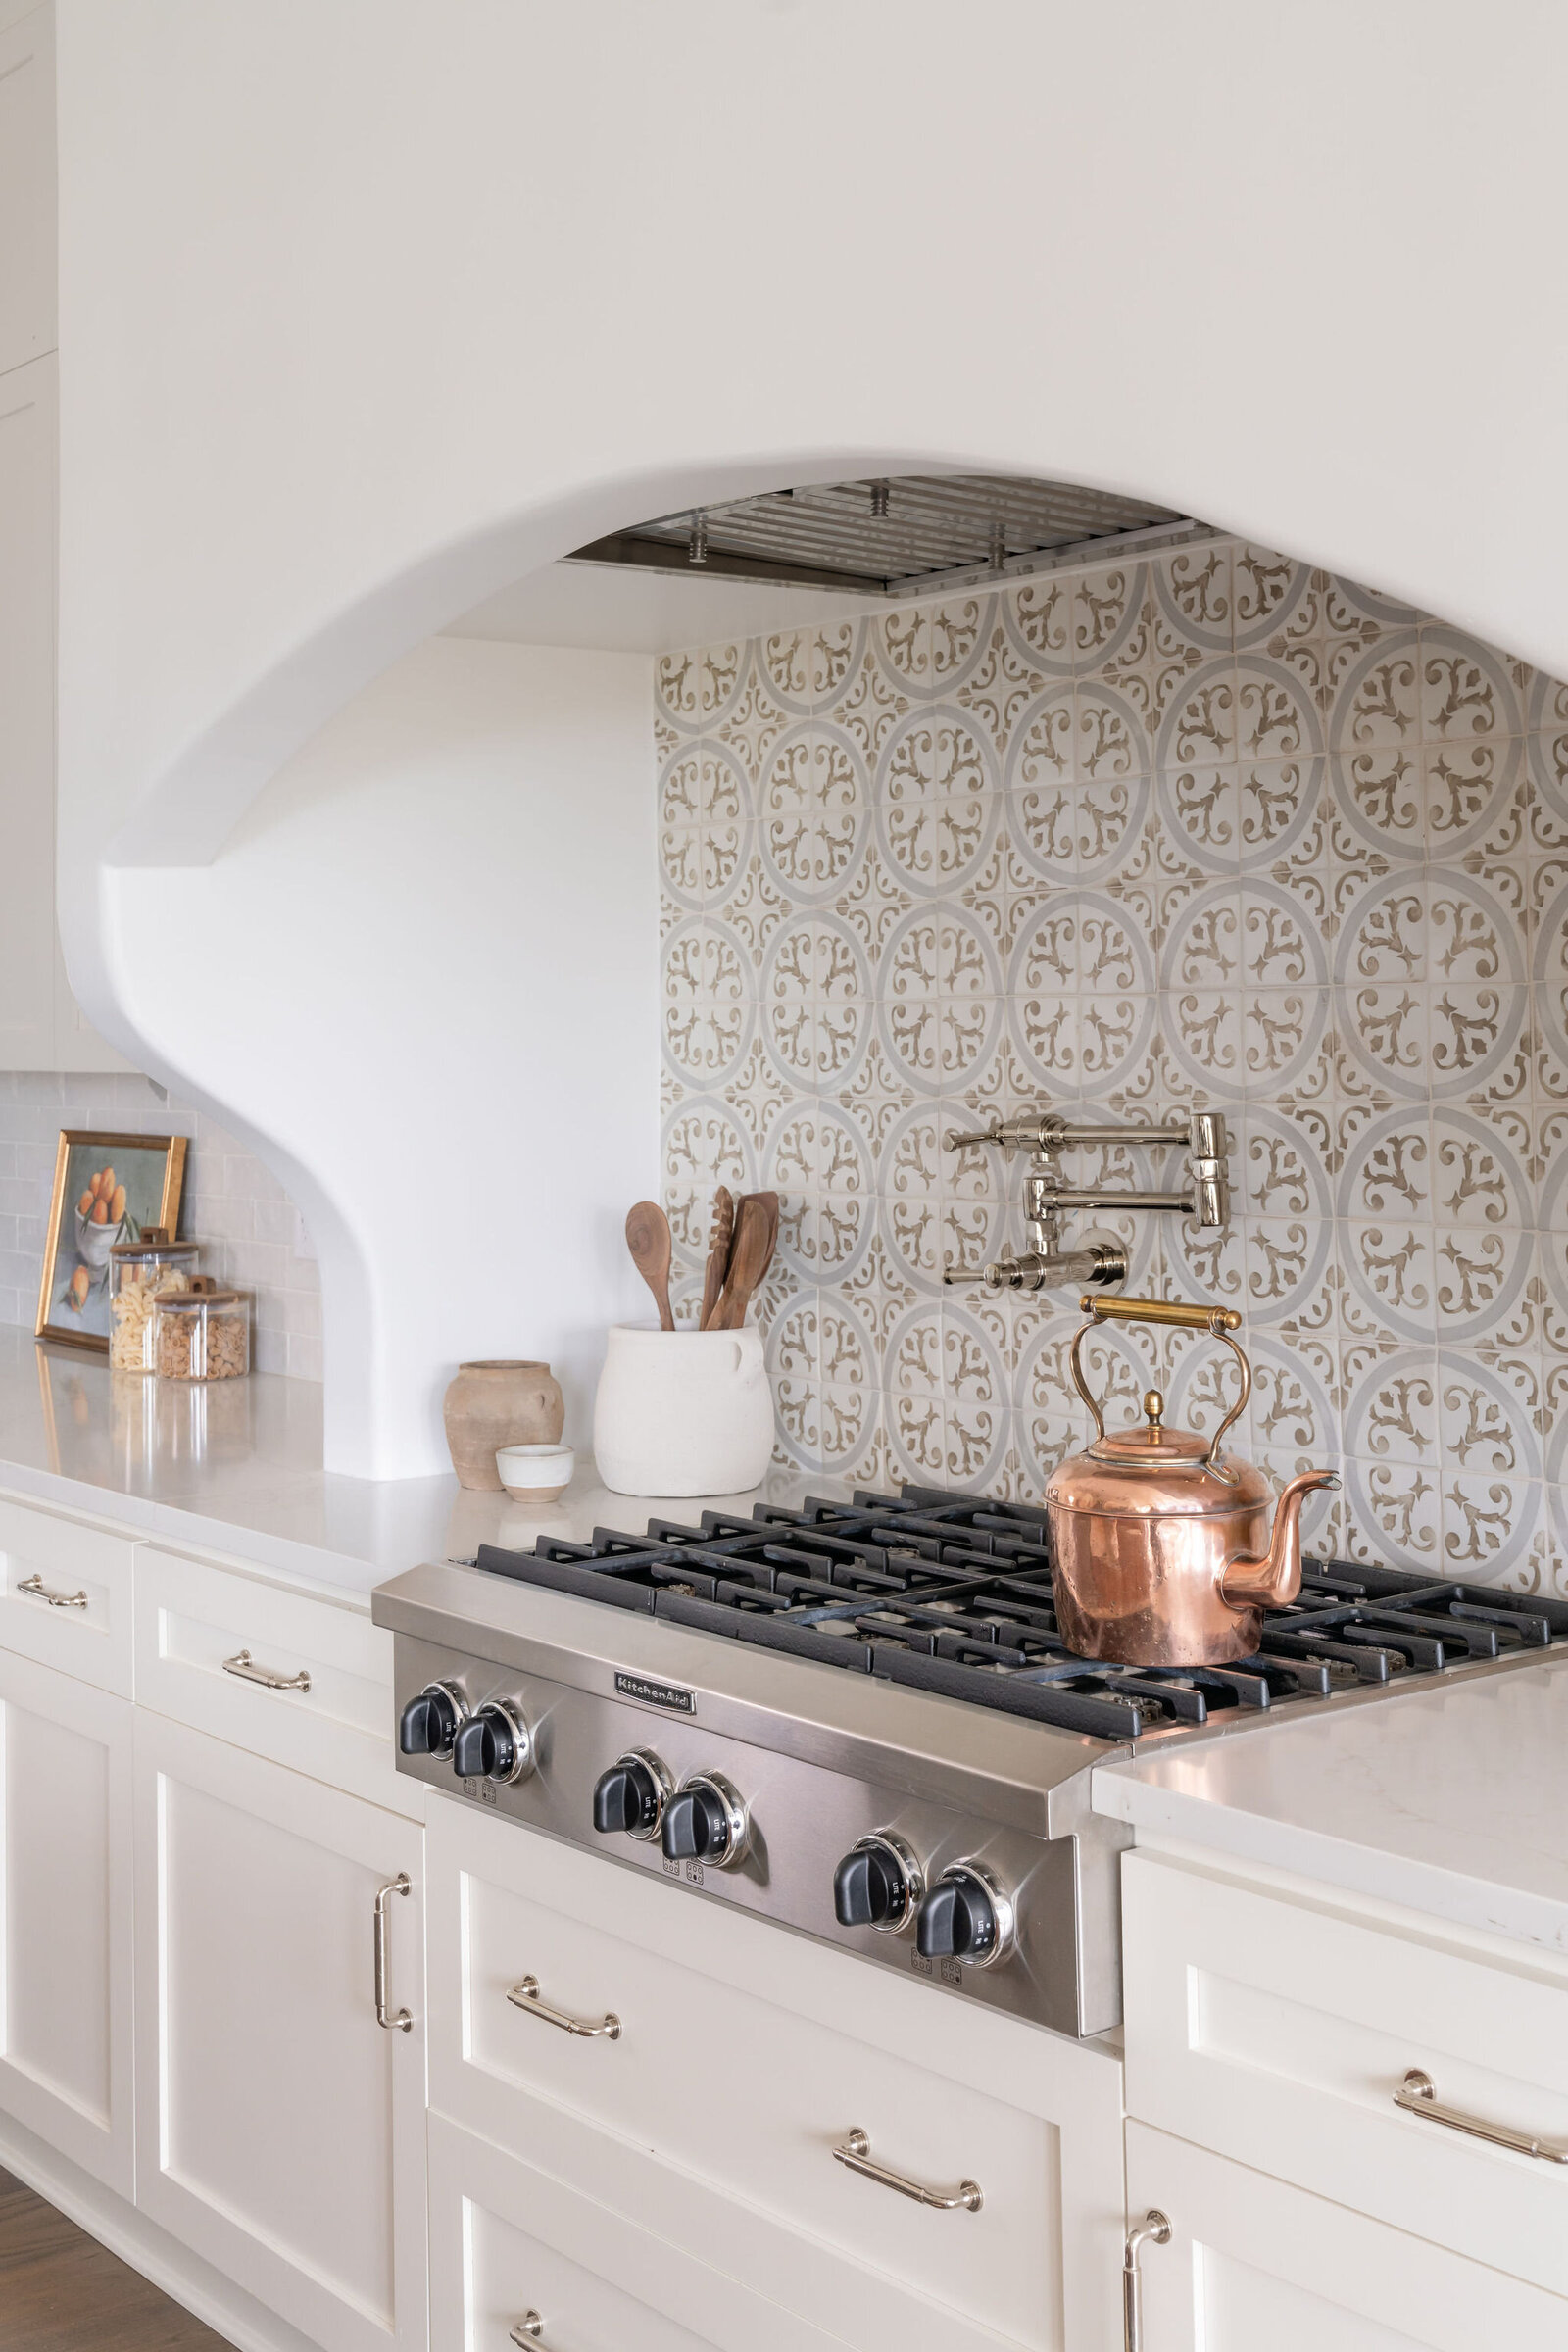 Nuela_Designs_Interior_Design_Kitchen_Design_Patterned_Tile_Backsplash